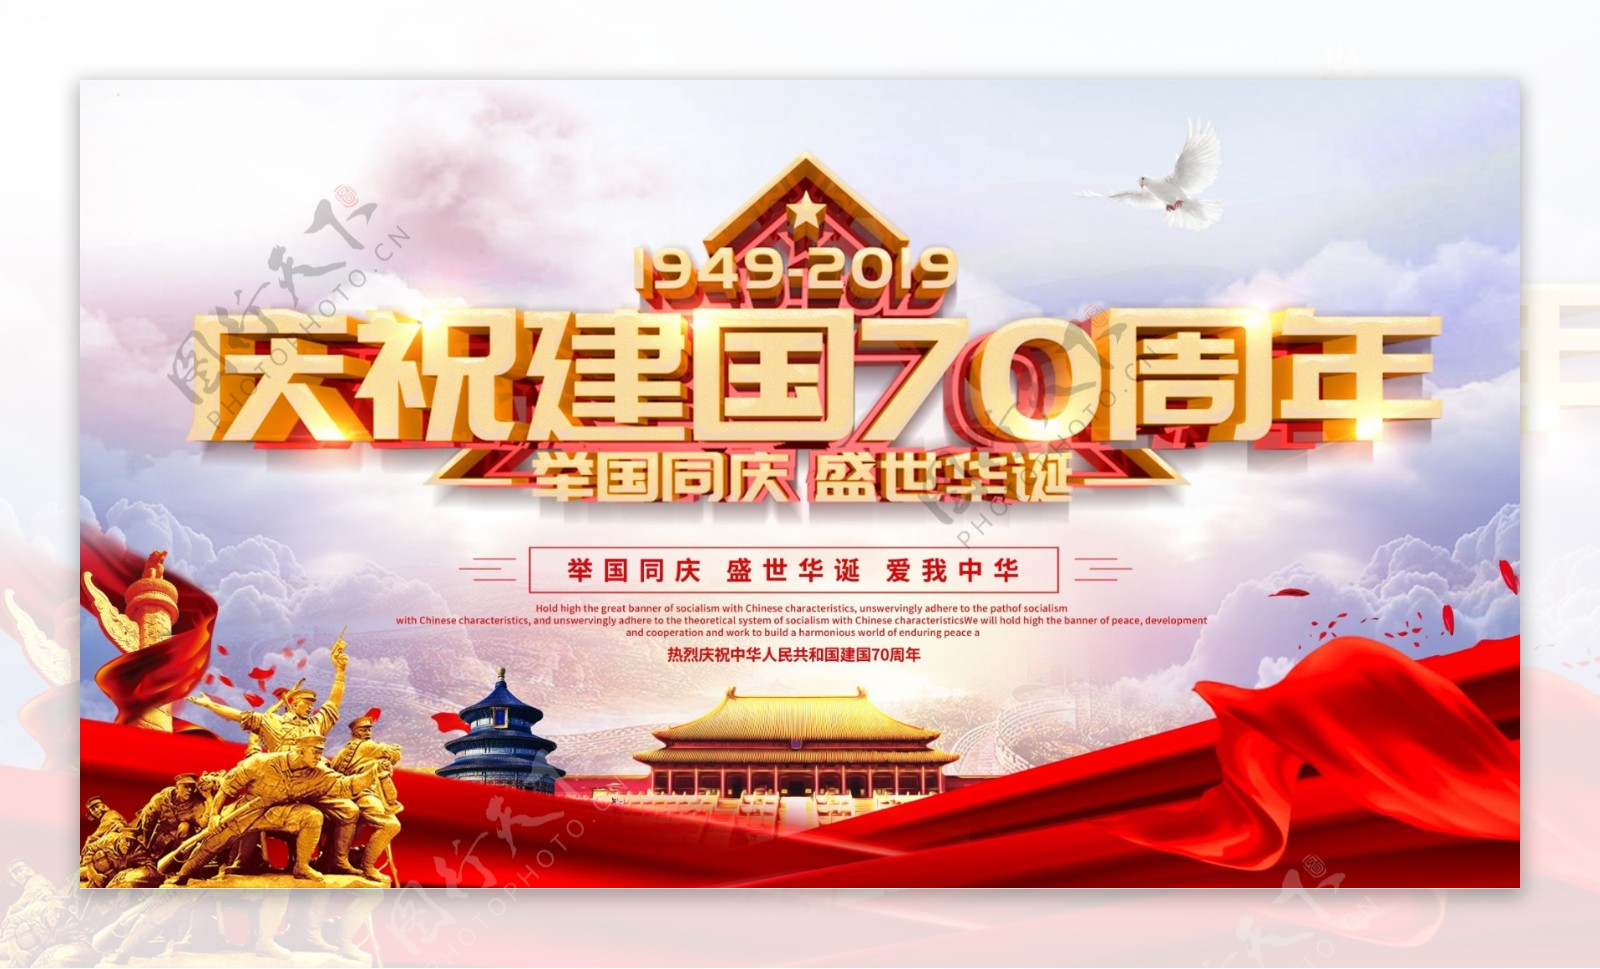 庆祝新中国成立70周年